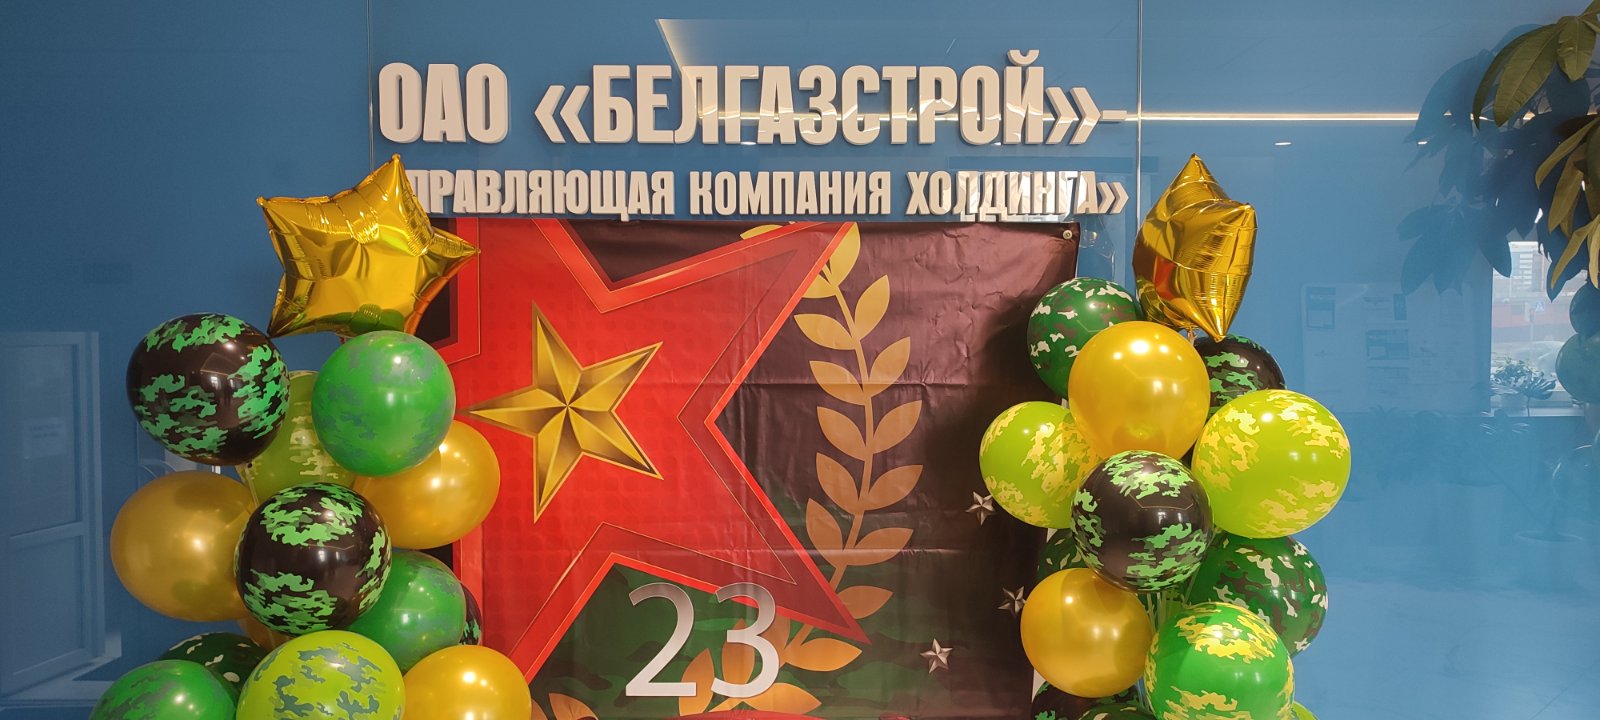 В ОАО "БЕЛГАЗСТРОЙ"- управляющая компания холдинга " поздравили мужчин с Днем защитника отечества.